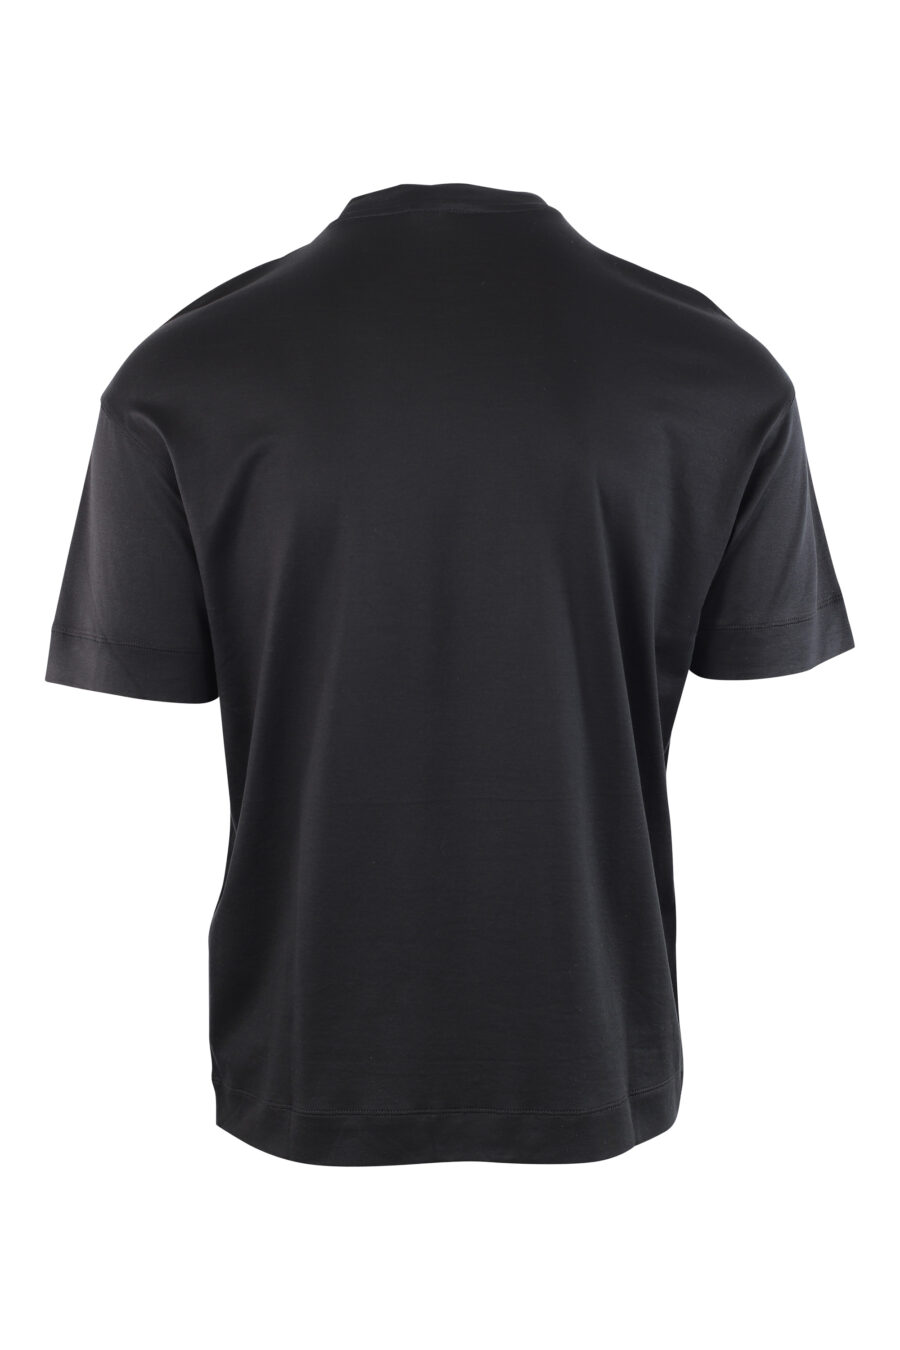 Camiseta negra con logo monocromático centrado - IMG 3783